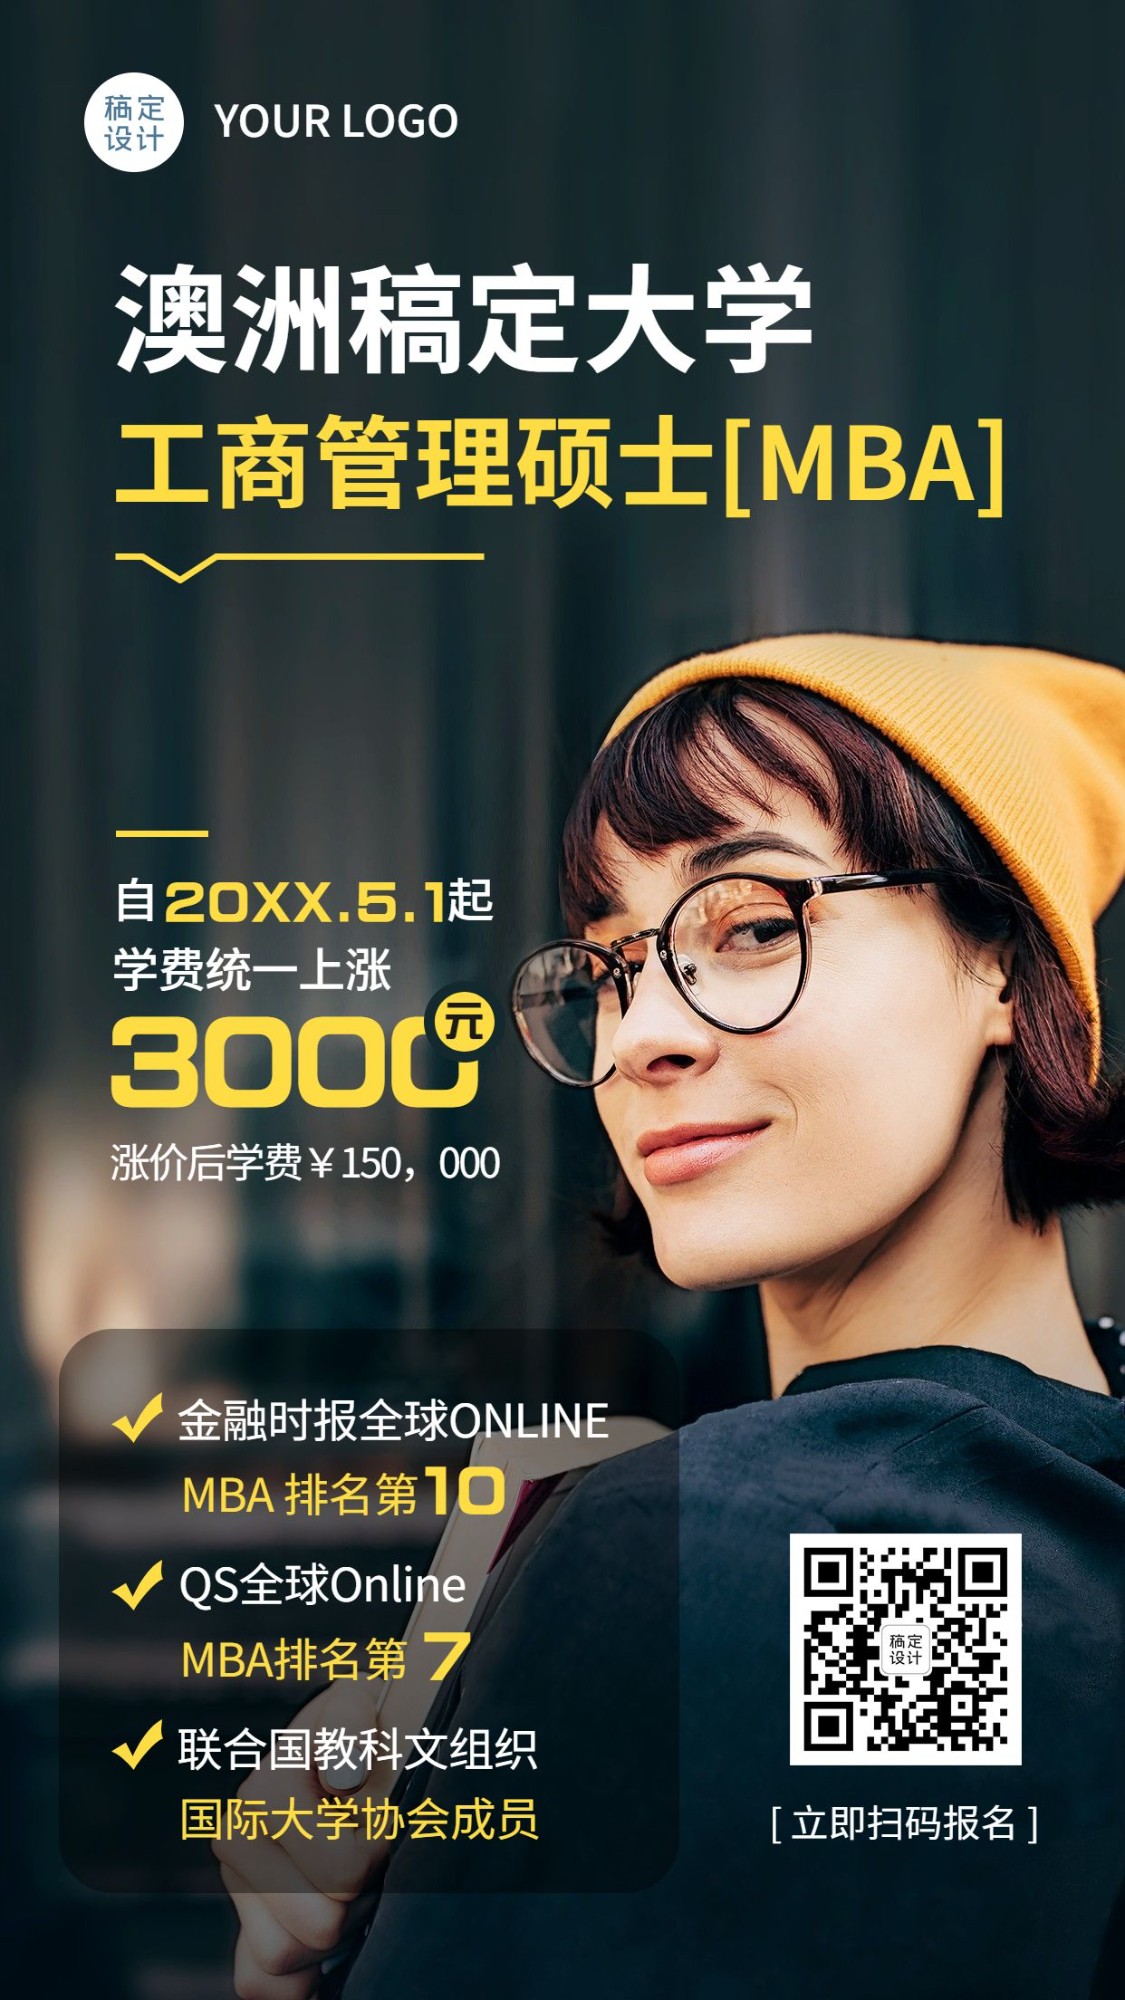 学历提升MBA课程招生简约商务海报预览效果